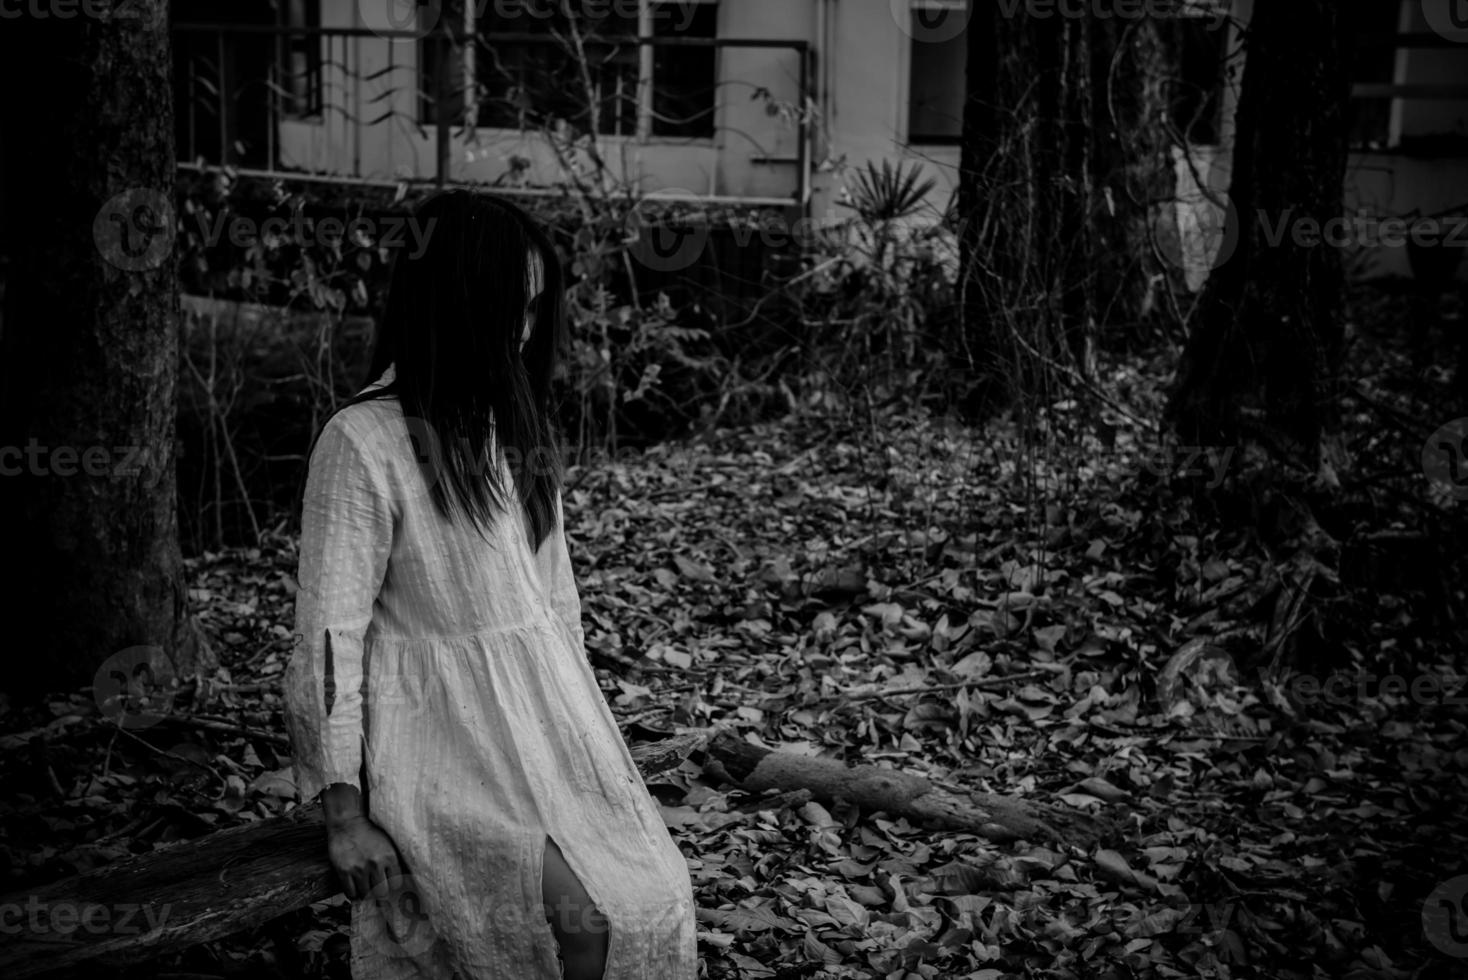 ritratto di donna asiatica make up fantasma, scena horror spaventosa per lo sfondo, concetto di festival di halloween, poster di film di fantasmi foto